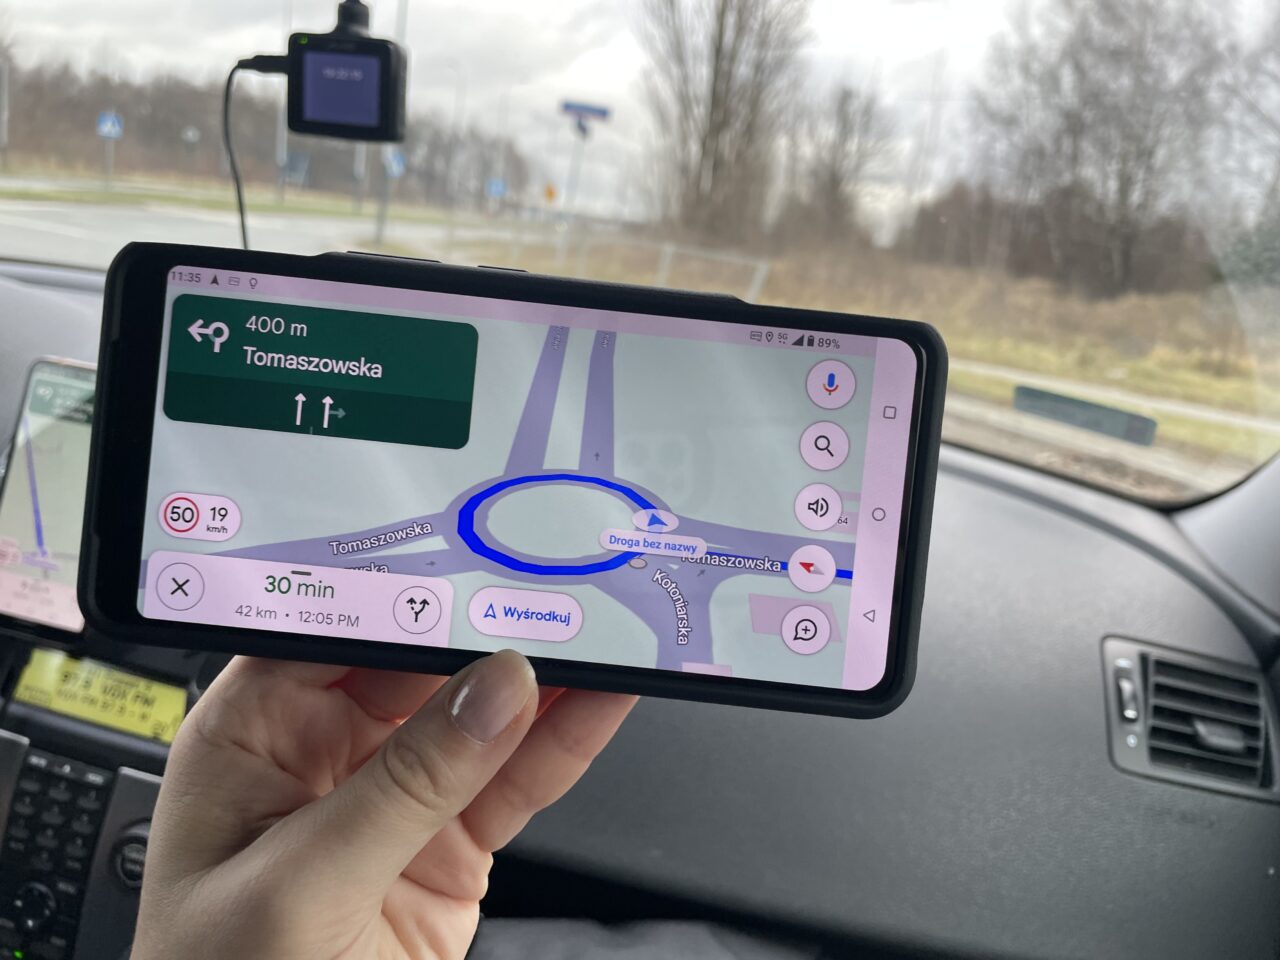 Ręka trzymająca smartfon z włączoną aplikacją nawigacyjną w samochodzie, pokazującą mapę i wskazówki dojazdu, z nazwą ulicy Tomaszowska i czasem przyjazdu 30 minut.